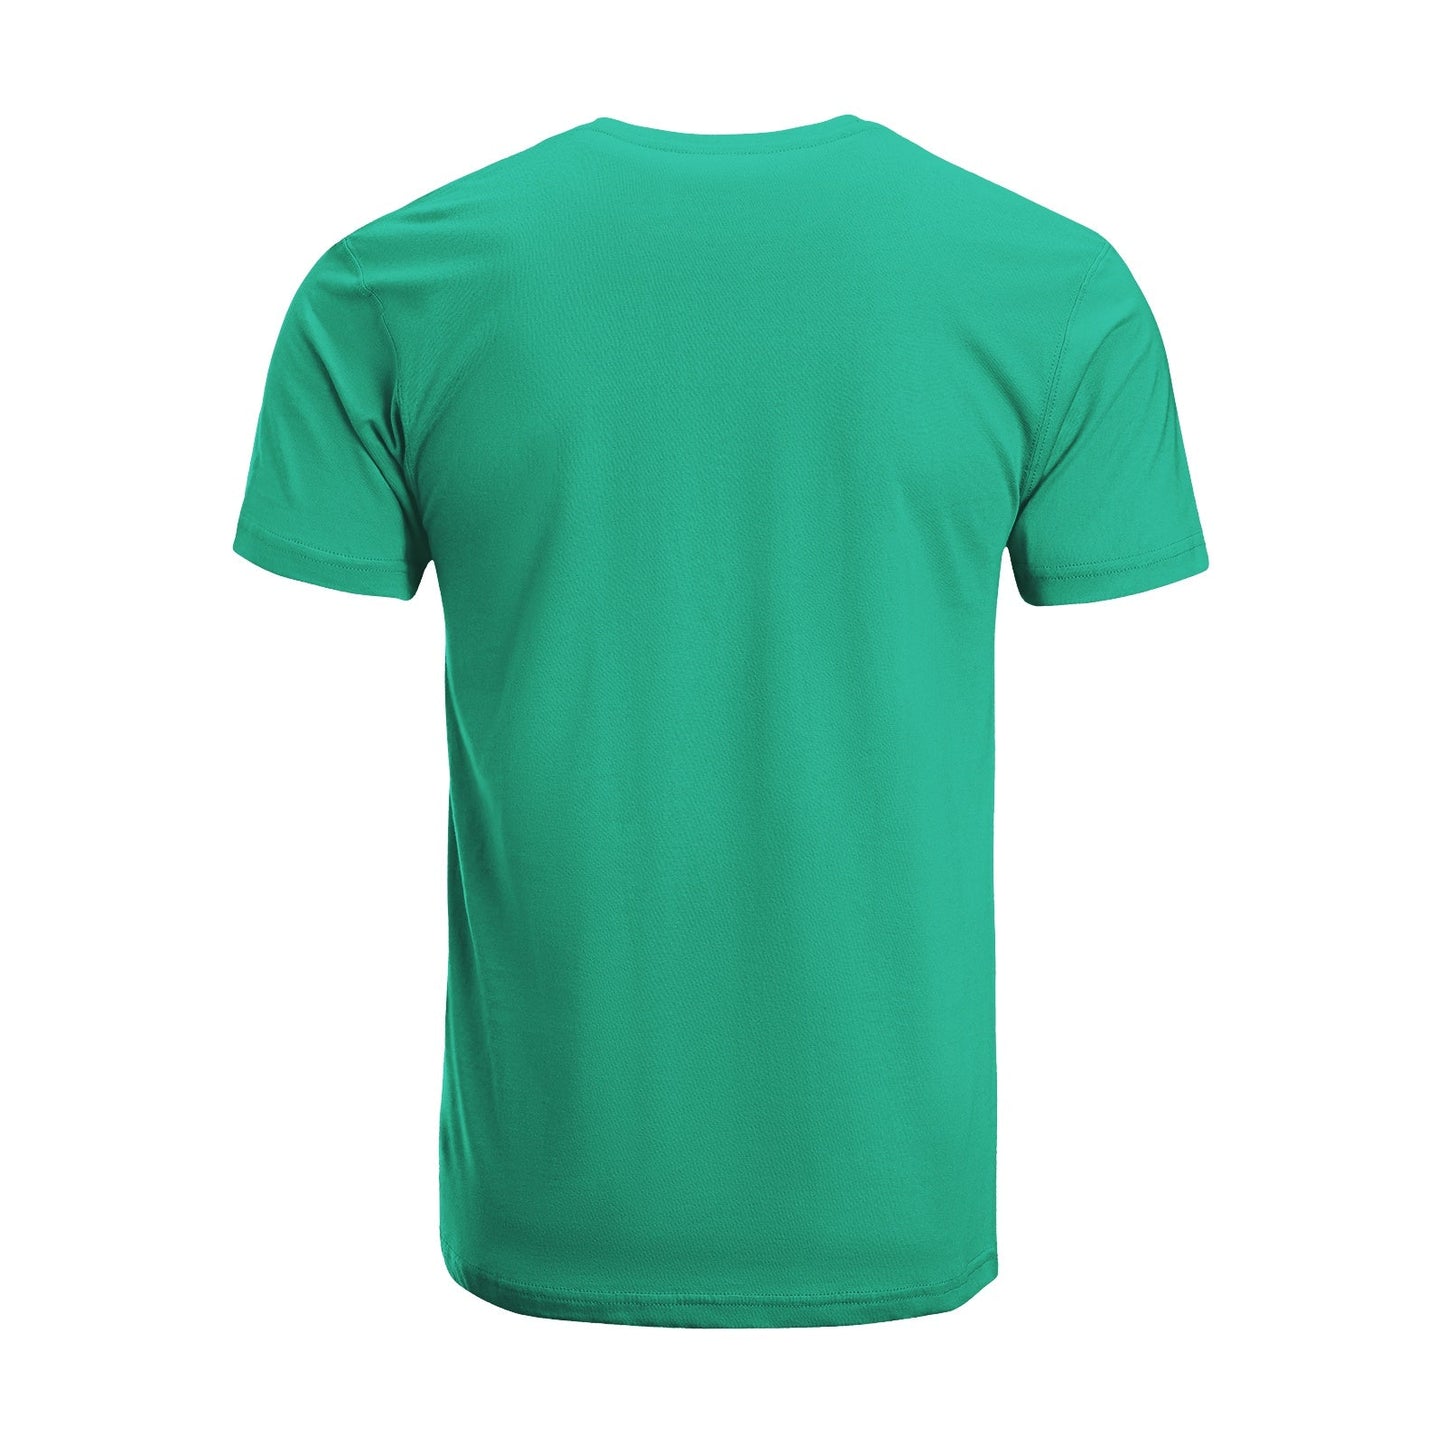 Unisex Short Sleeve Crew Neck Cotton Jersey T-Shirt TRUCK 26